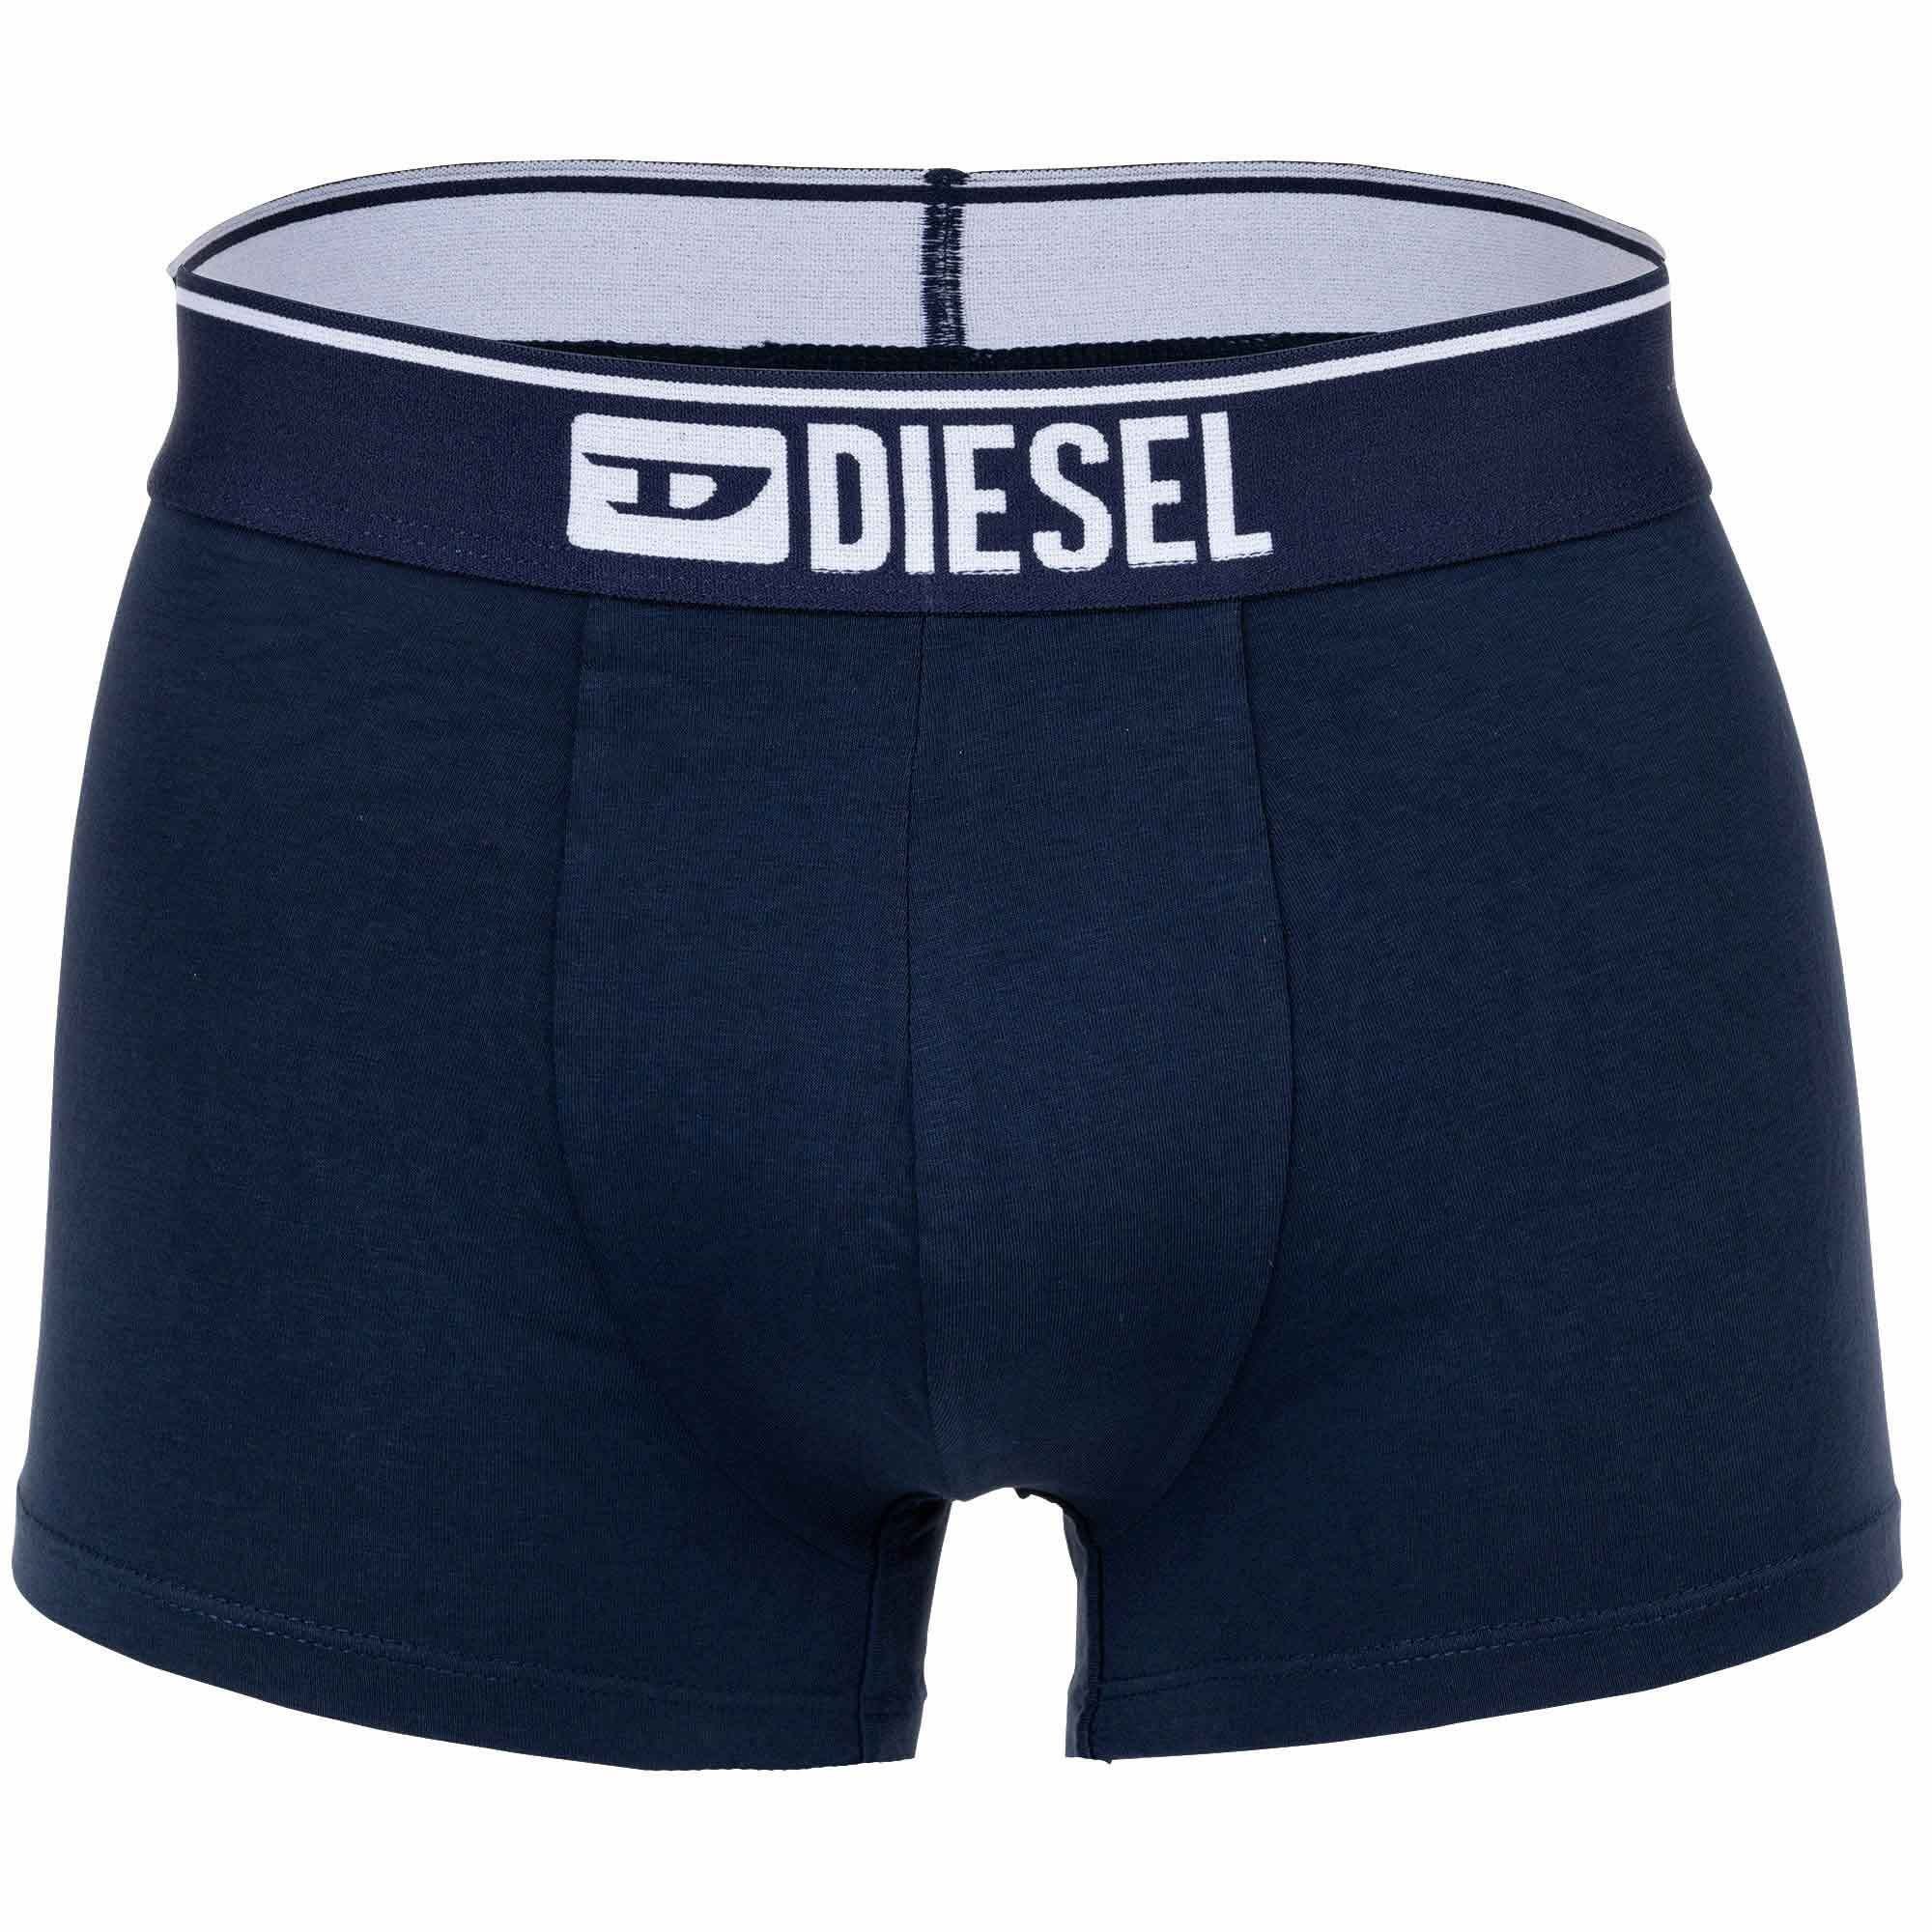 Diesel Boxer Pack Grau/Schwarz/Blau UMBX-DAMIENTHREEPACK Herren Boxershorts - 3